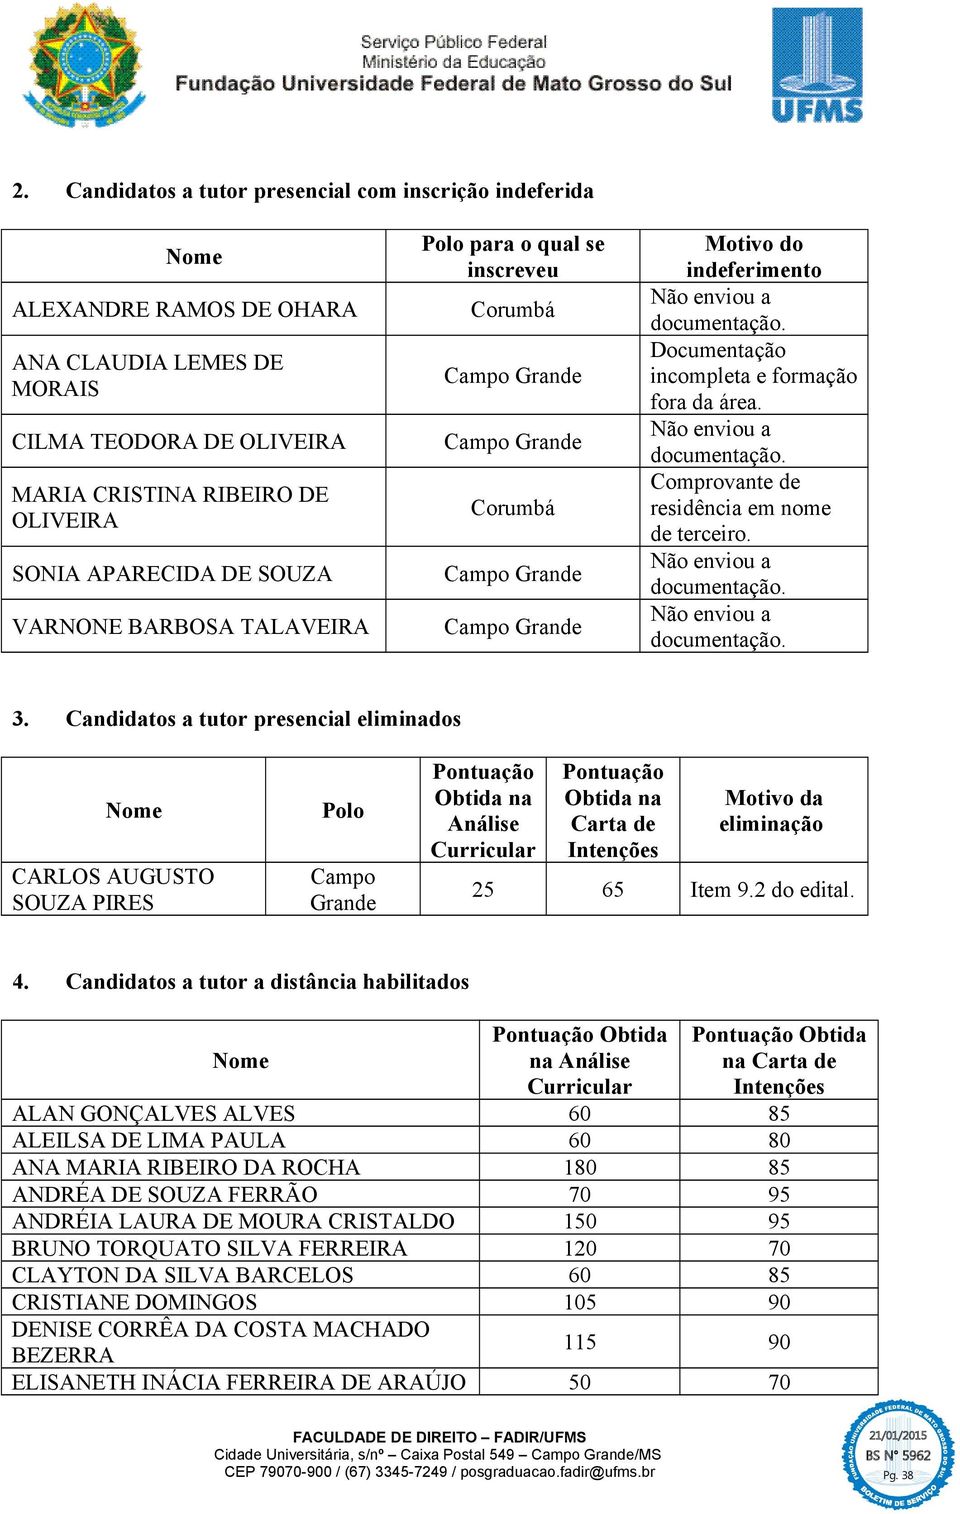 Candidatos a tutor presencial eliminados CARLOS AUGUSTO SOUZA PIRES Polo Campo Grande Análise Carta de Motivo da eliminação 25 65 Item 9.2 do edital. 4.